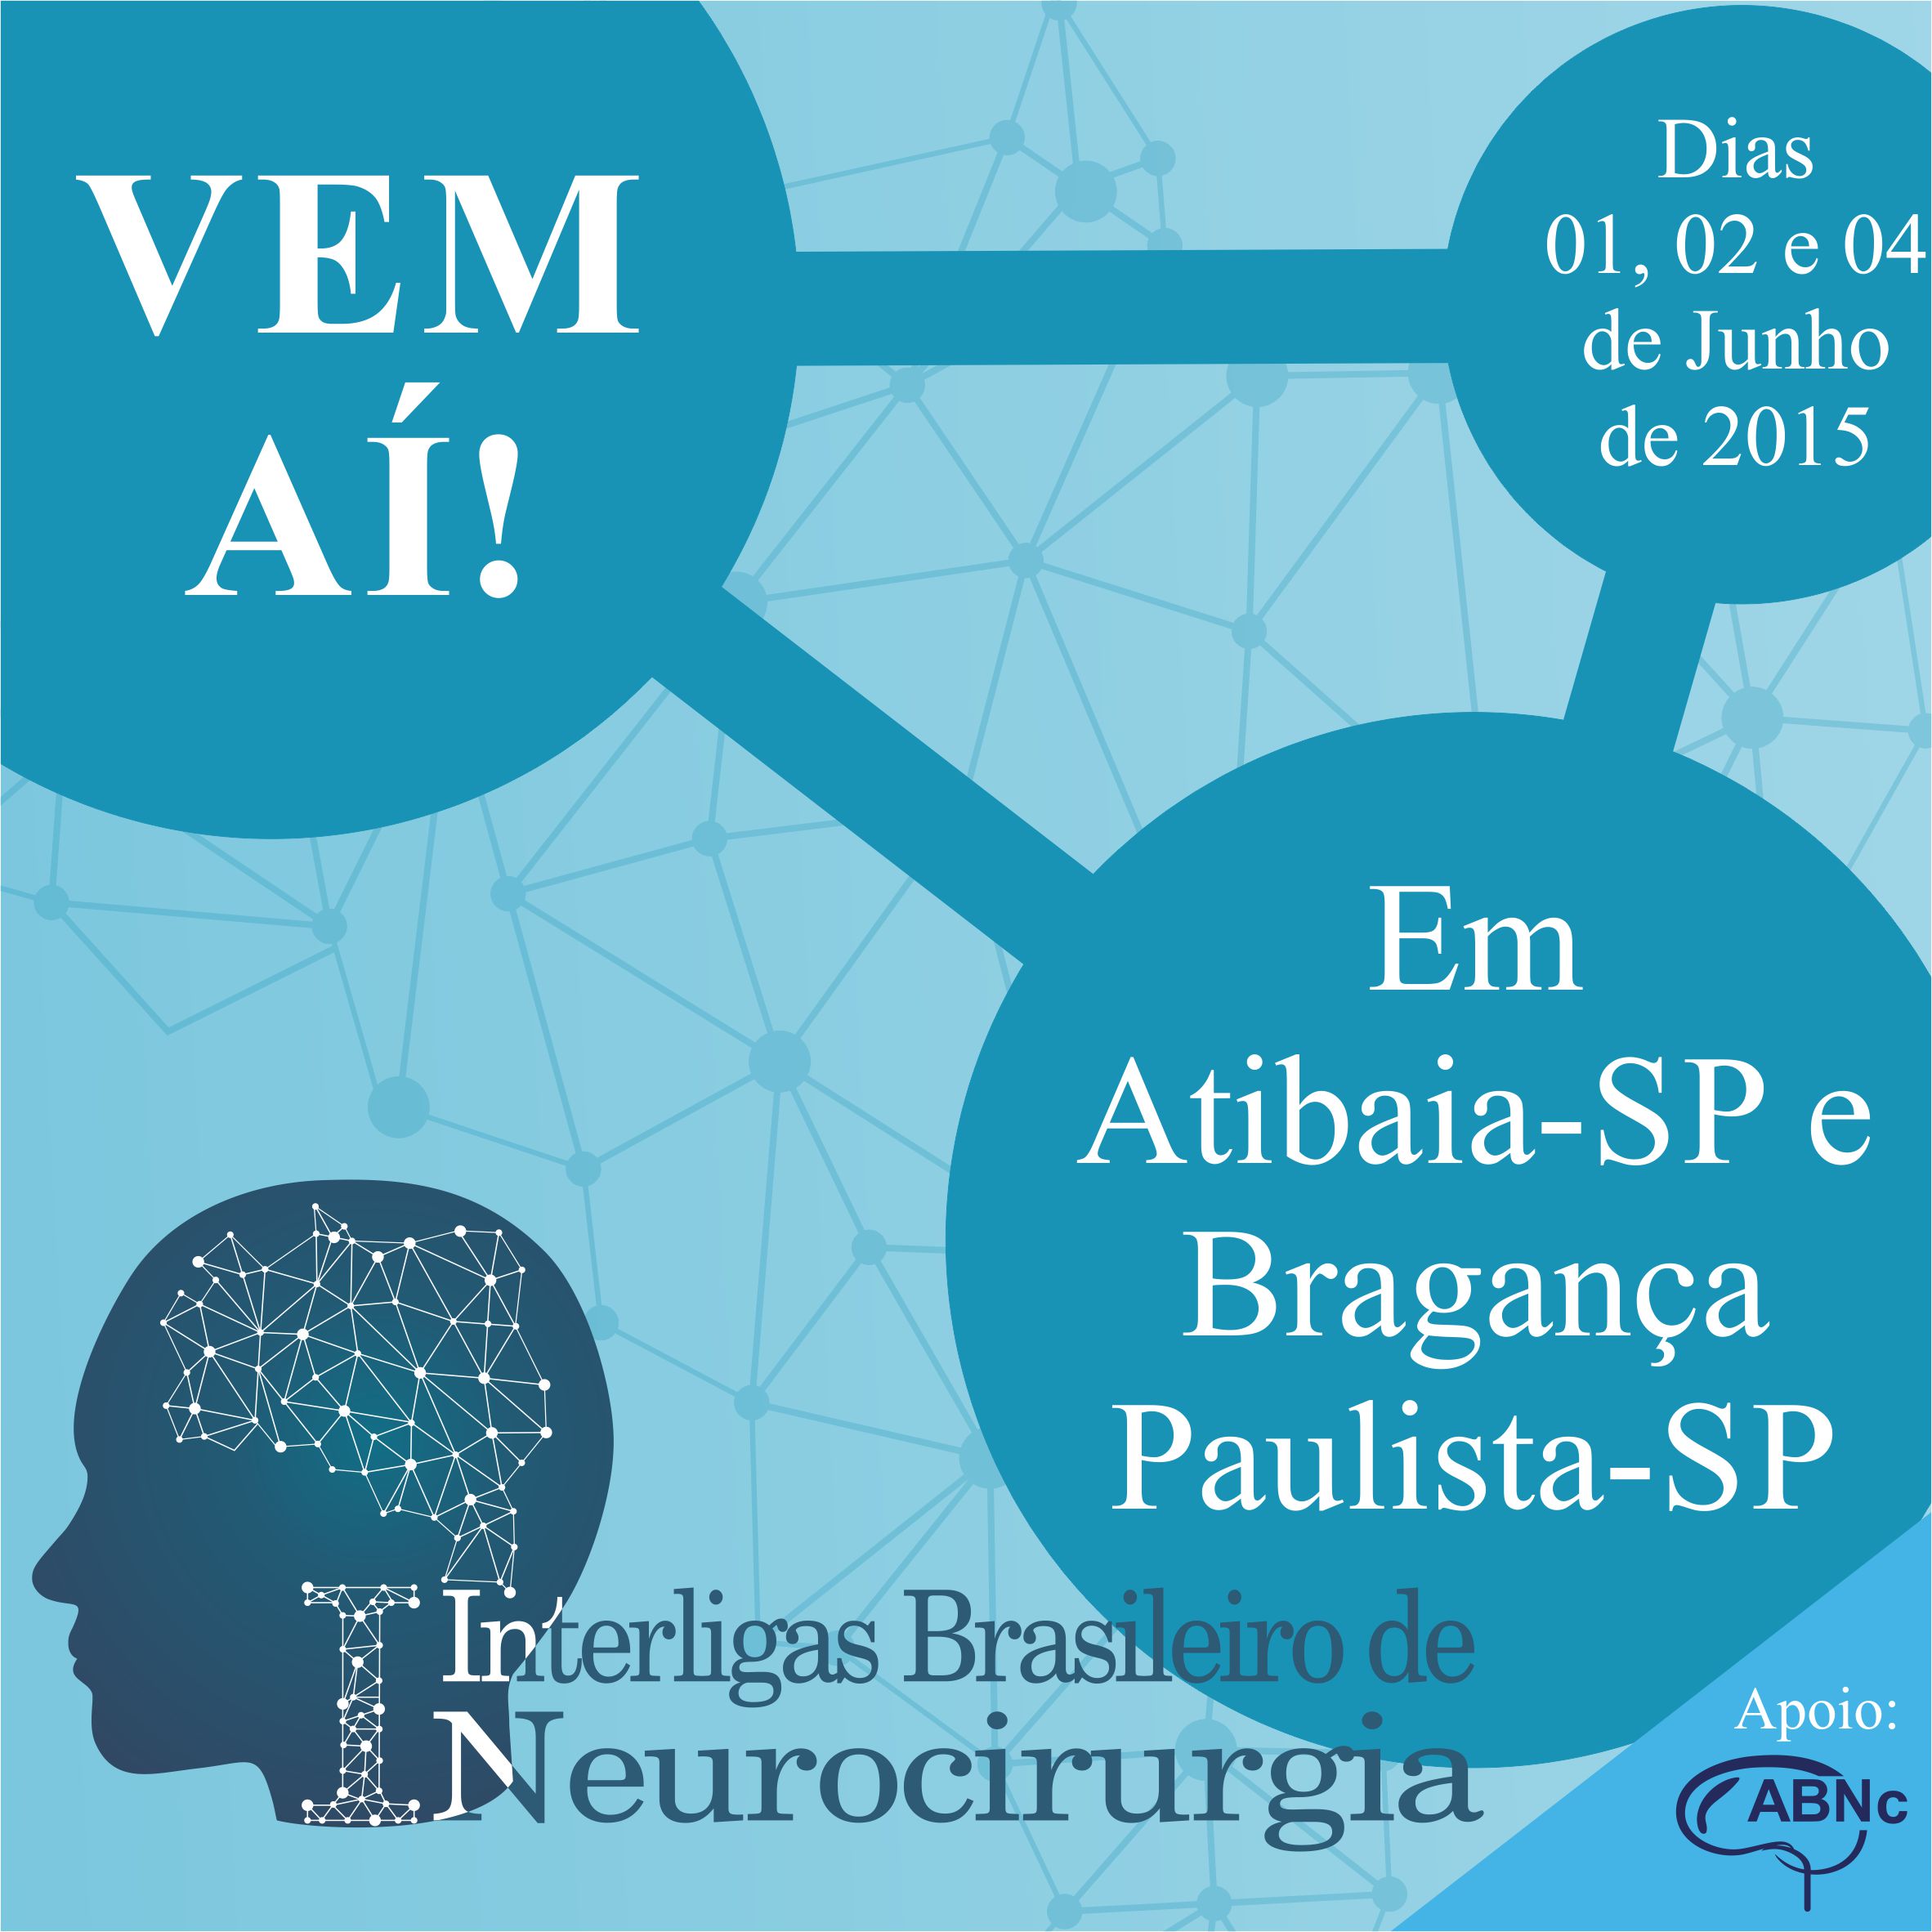 I Interligas Brasileiro de Neurocirurgia